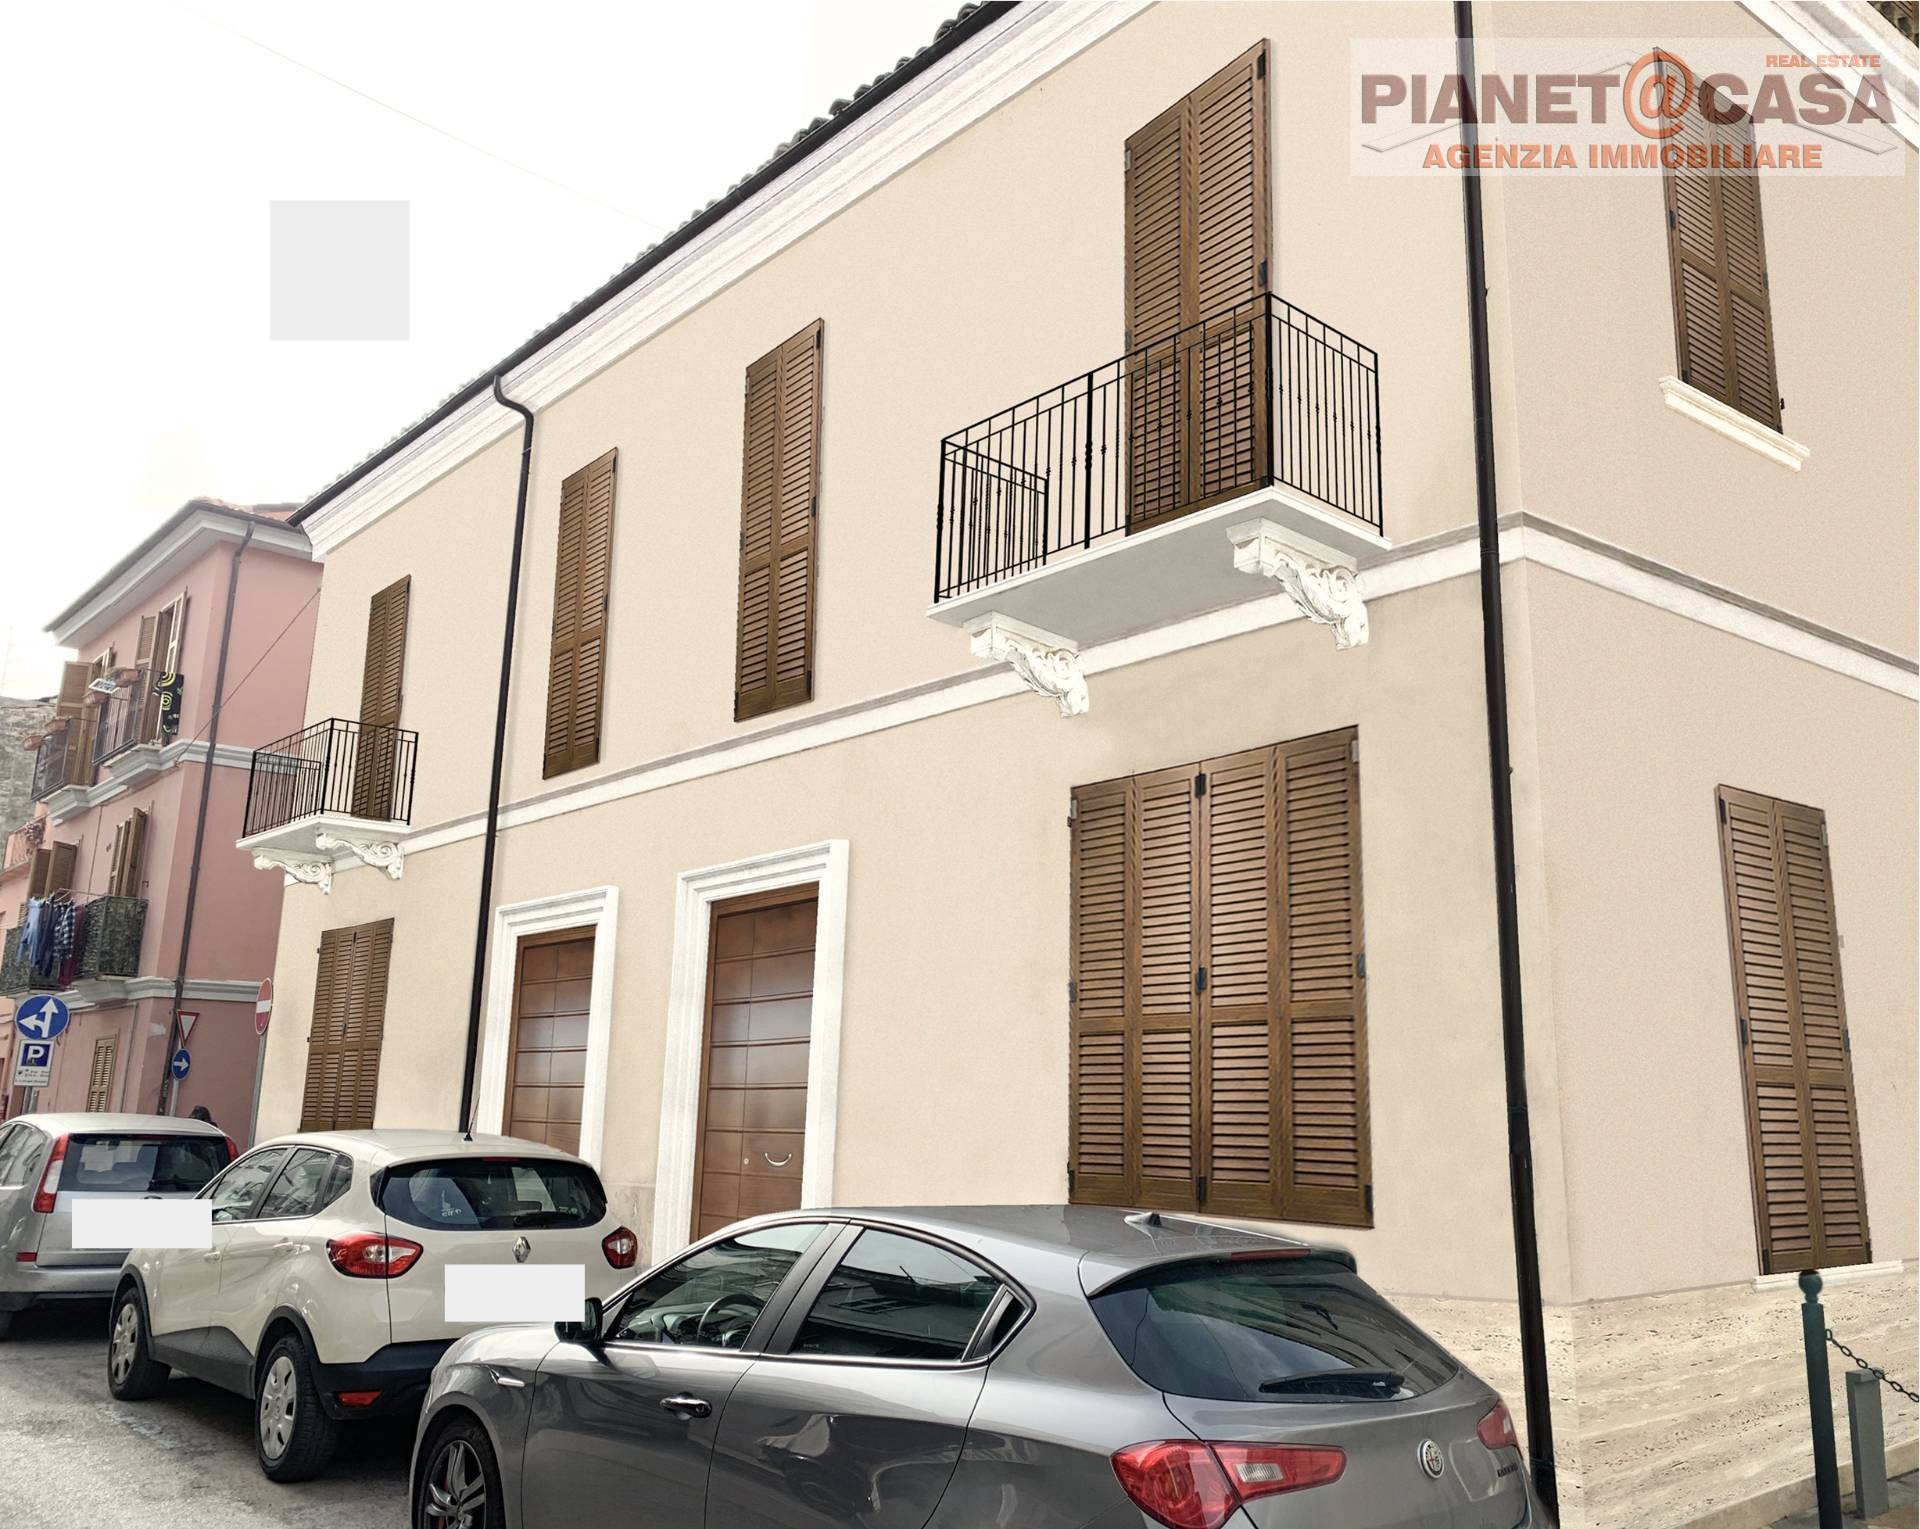 Appartamento in vendita a San Benedetto del Tronto, 4 locali, zona Località: CENTRO, prezzo € 650.000 | PortaleAgenzieImmobiliari.it